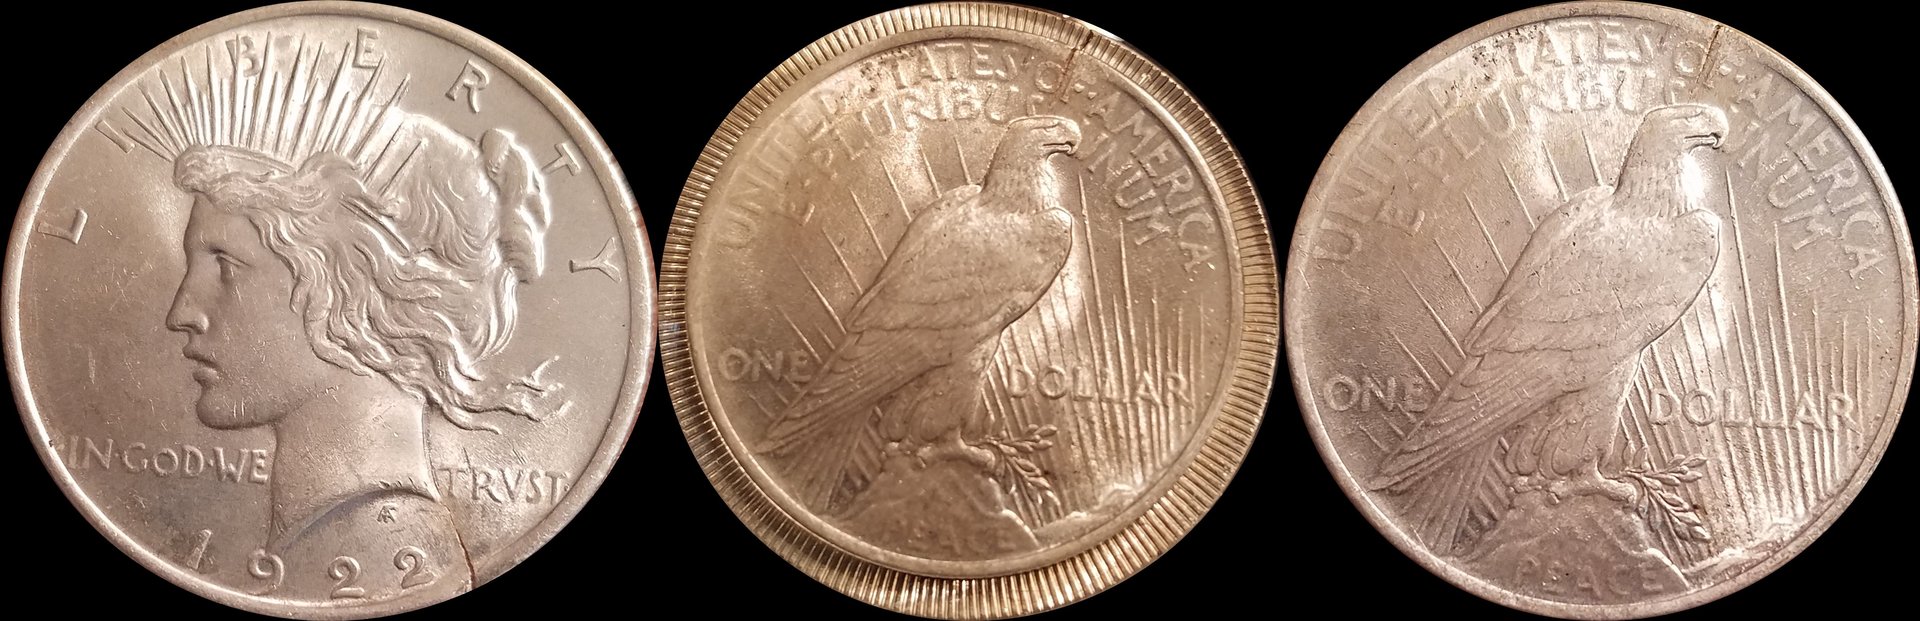 1922 Split Peace Dollar.jpg